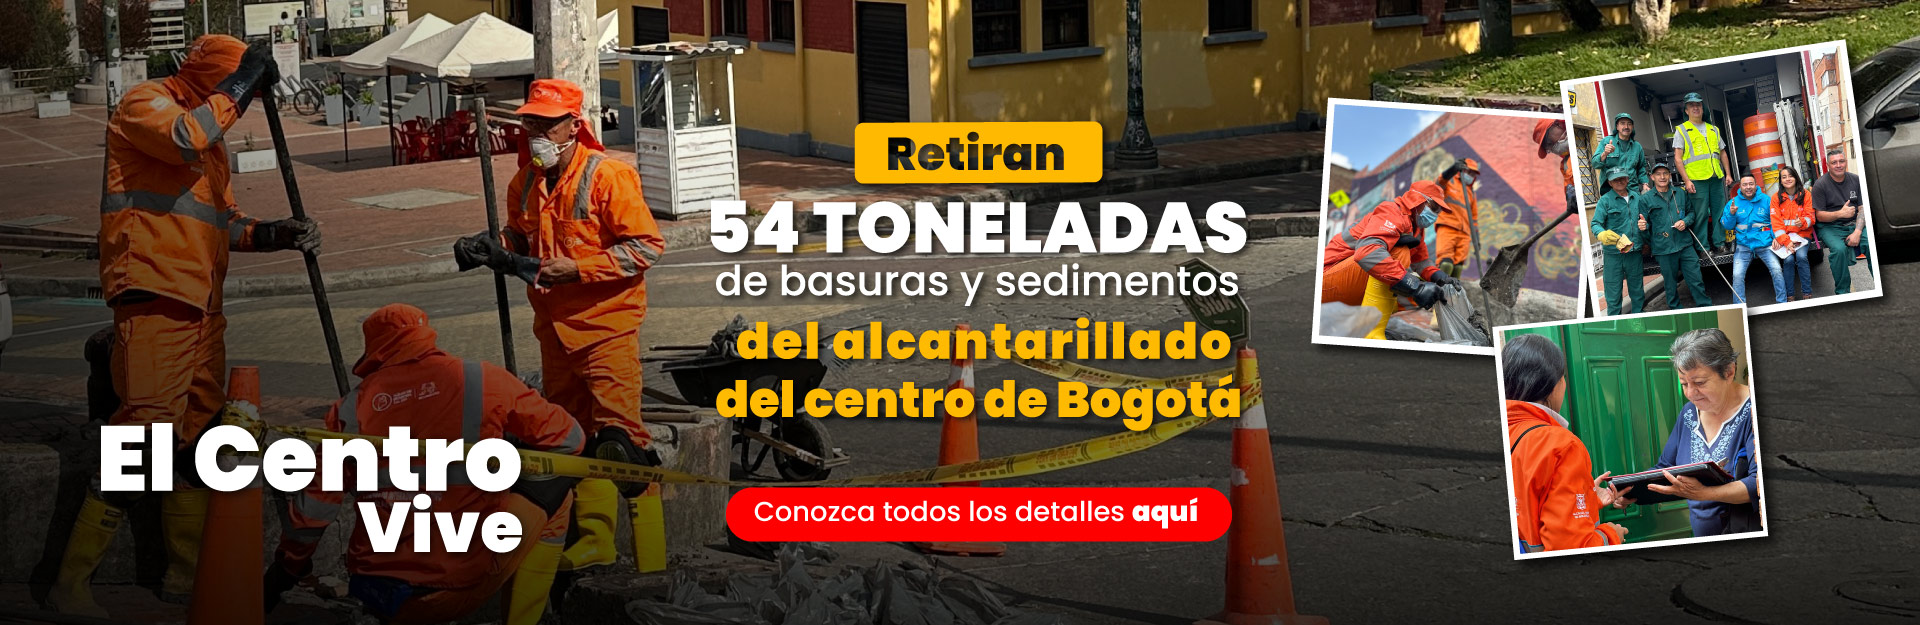 Retiran 54 toneladas de basuras y sedimentos del alcantarillado del centro de Bogotá